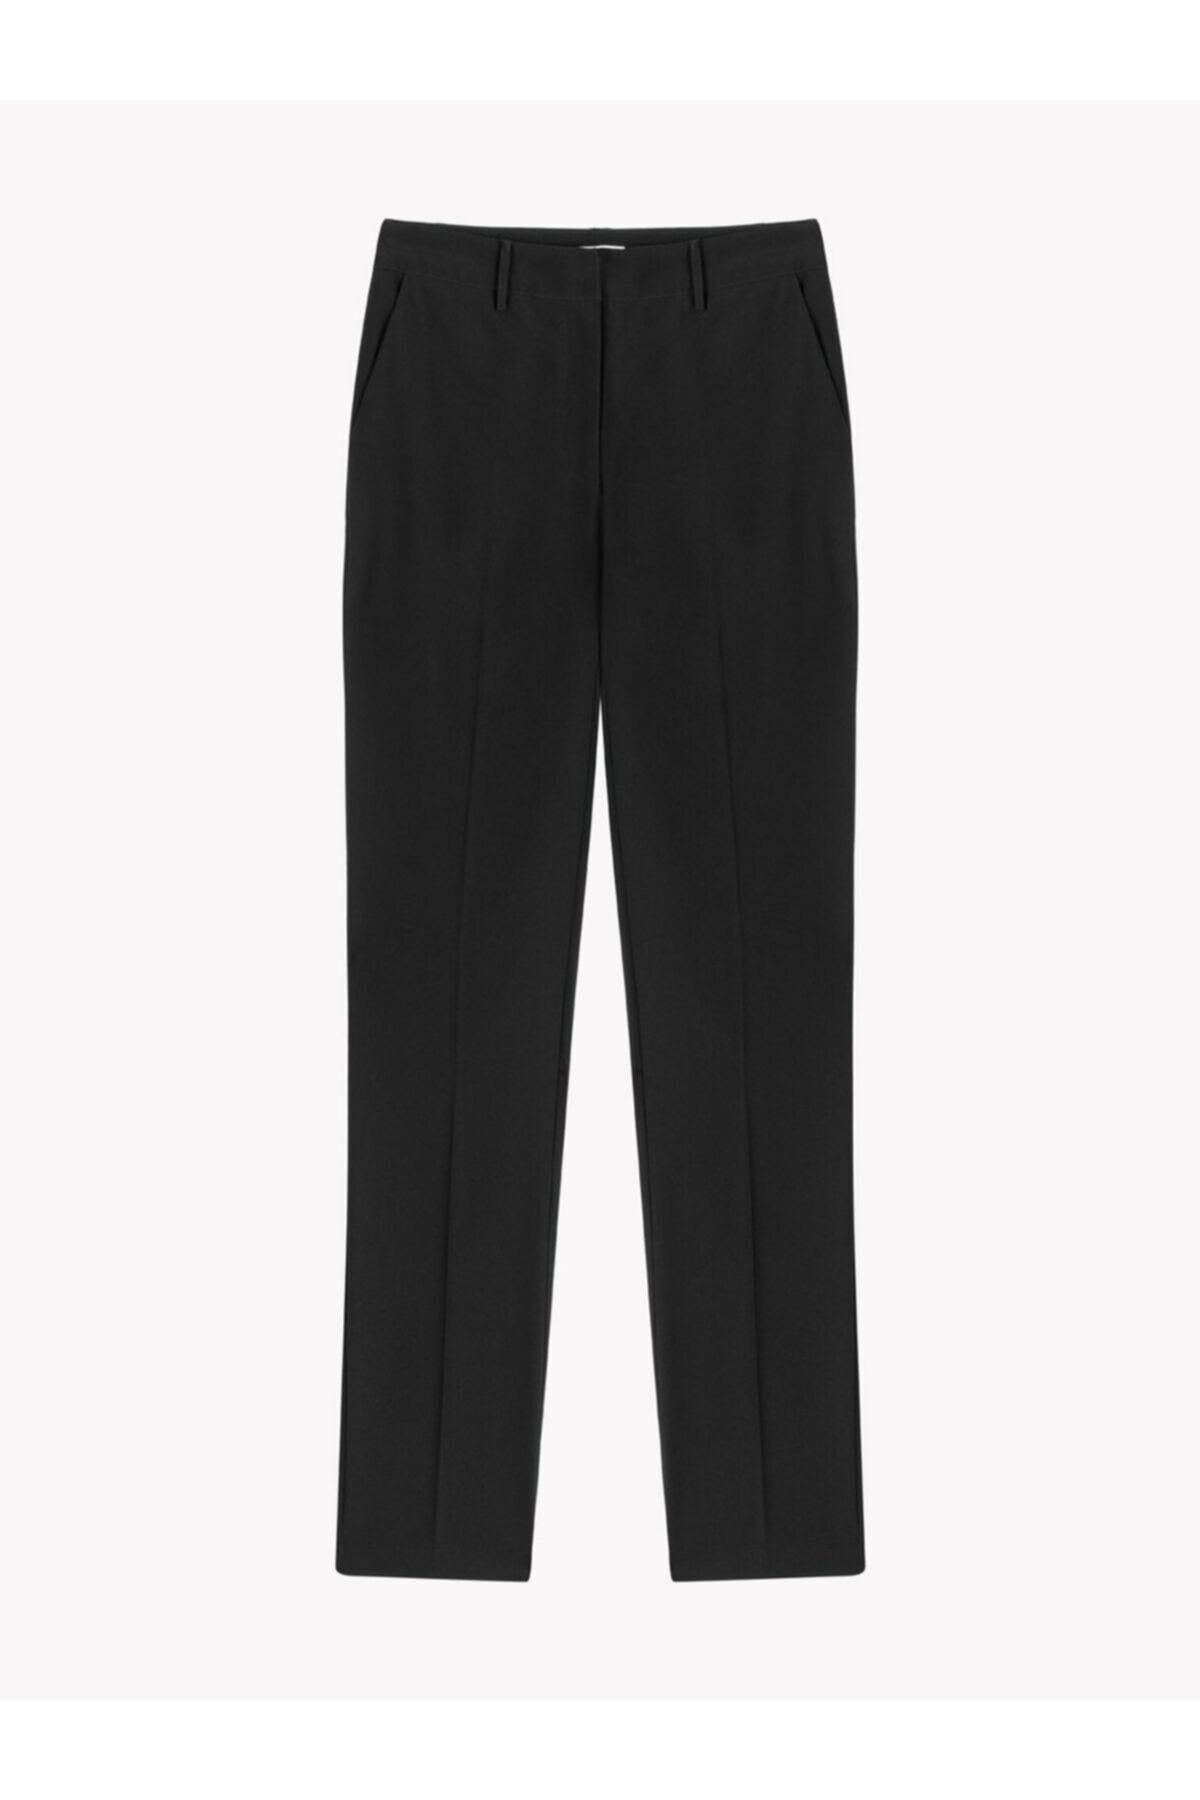 TWİST Klasik Kesim Siyah Kumaş Pantolon